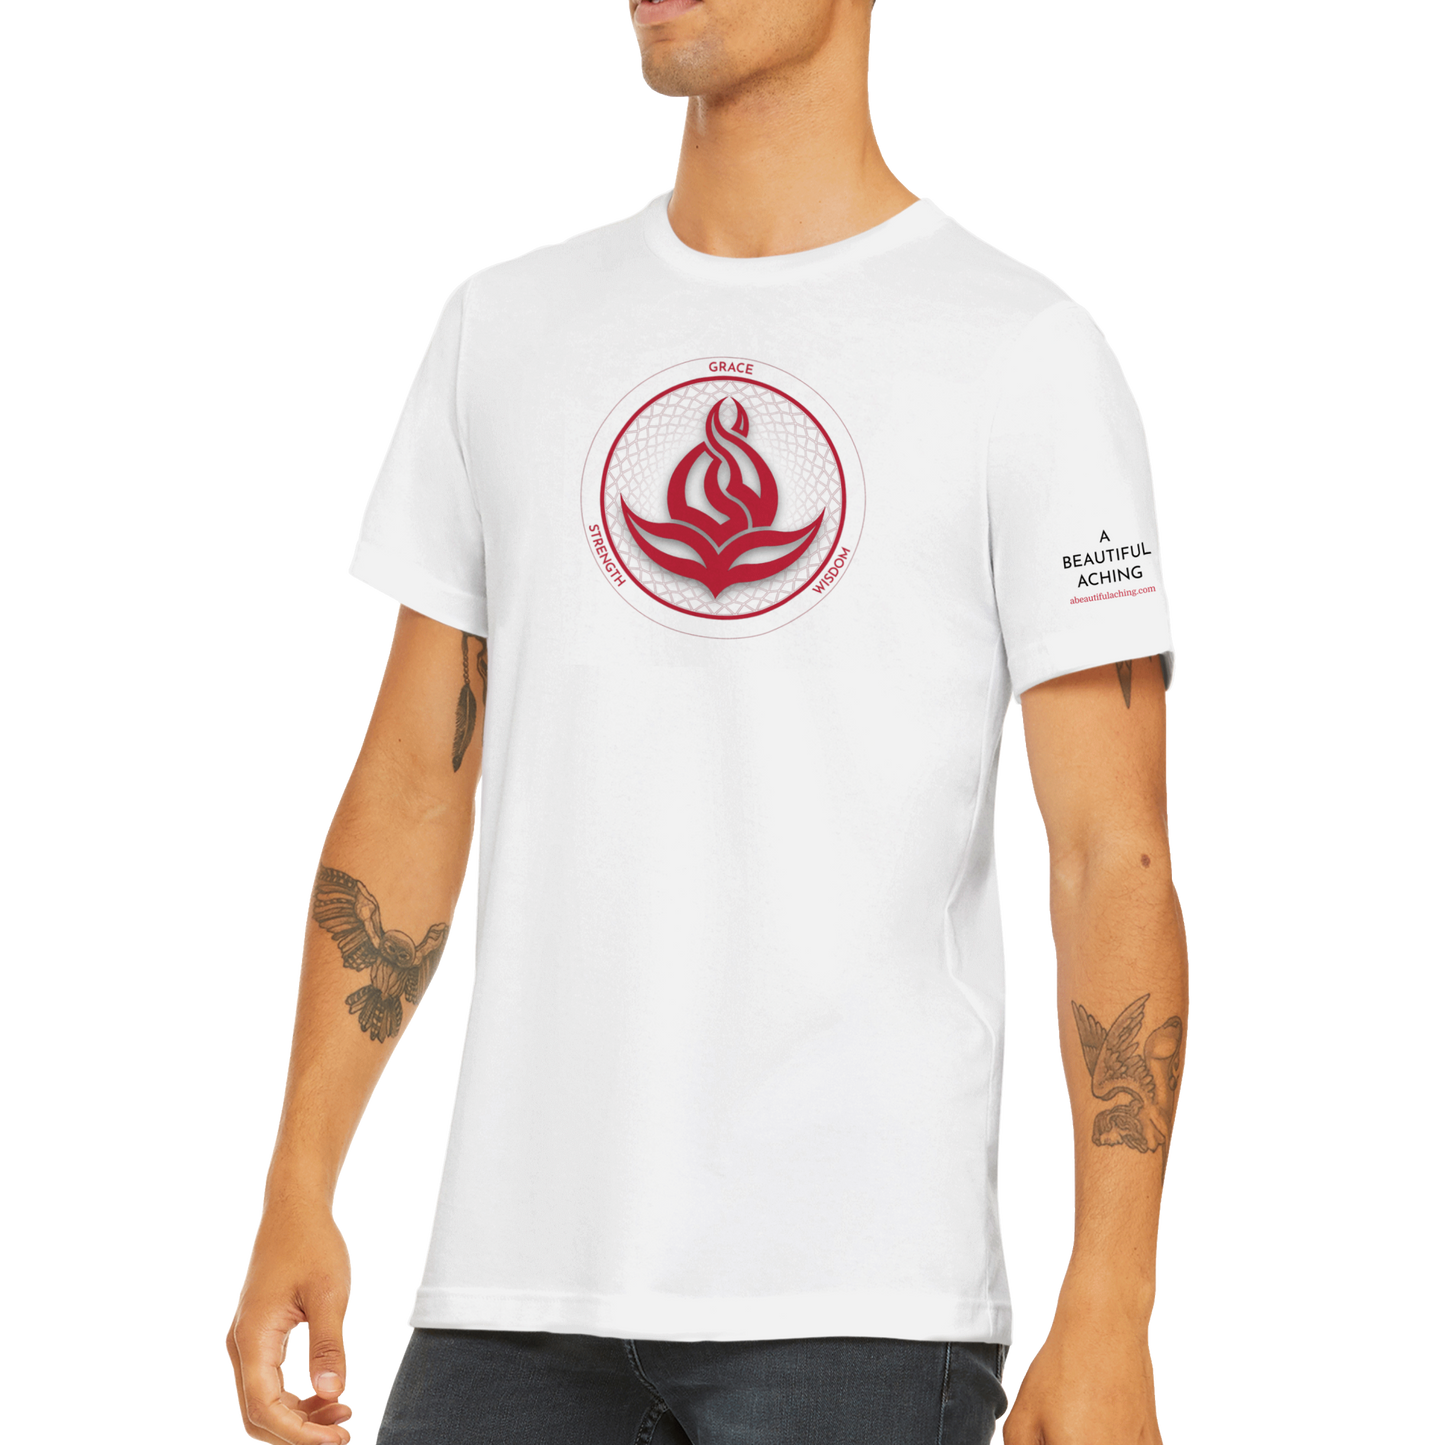 Men's/Unisex Fire Blossom T-Shirt - White